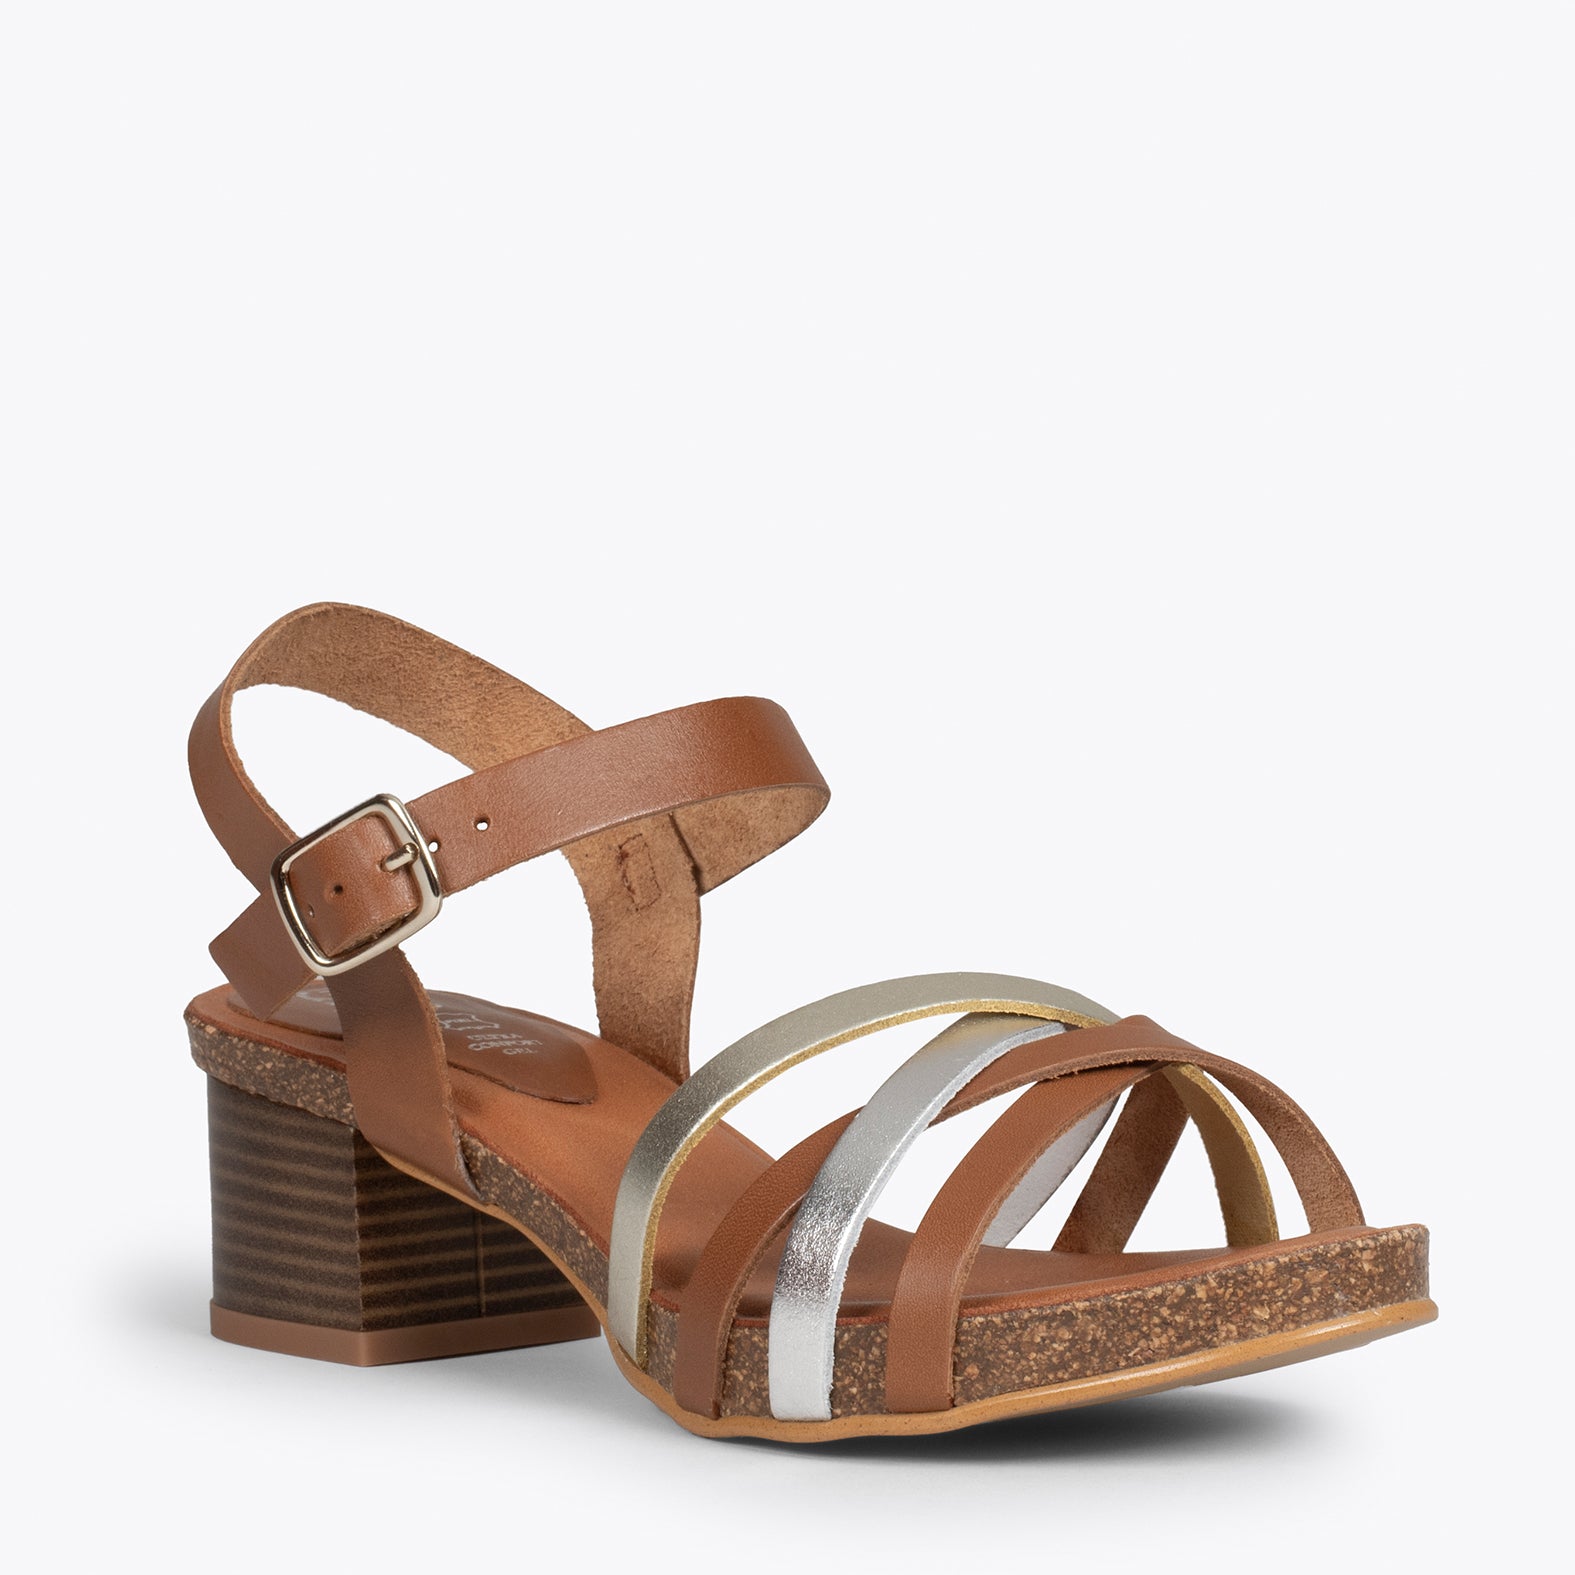 Sandalias cómodas con tacón BIO MARRÓN METALIZADO – miMaO ShopOnline